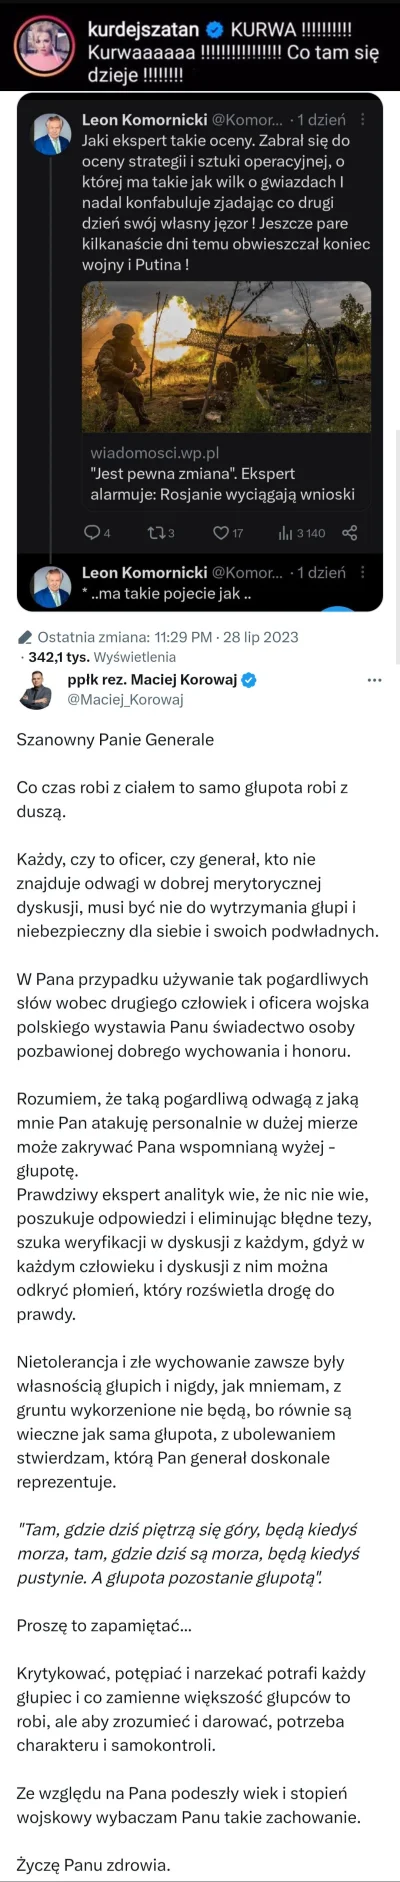 Corona-Regni-Poloniae - Nie wiedziałem, że Komornicki tak nienawidzi Korowaja i z wza...